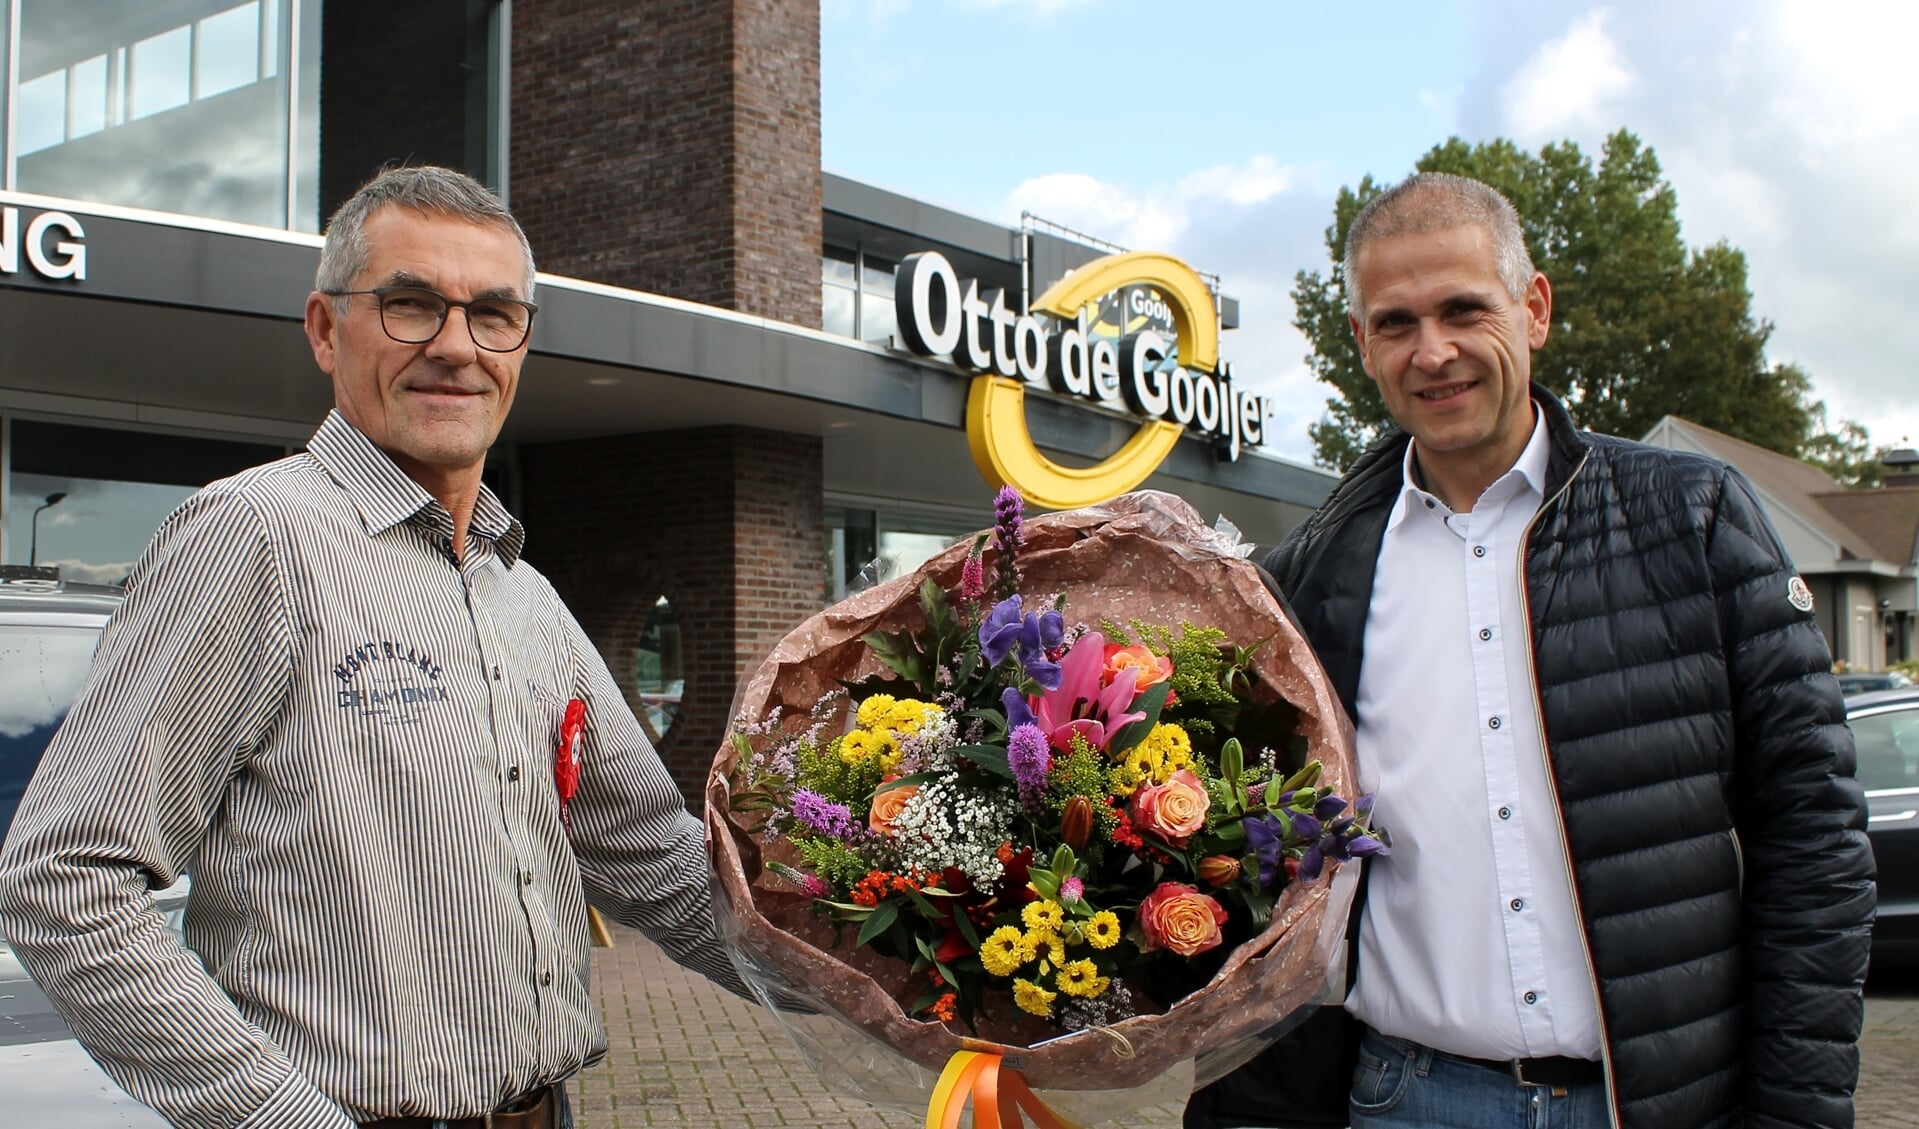 Jubilaris Jan van den Bos krijgt uit handen van Otto de Gooijer (l) een mooie bos bloemen ter gelegenheid van zijn 40-jarig werkjubileum